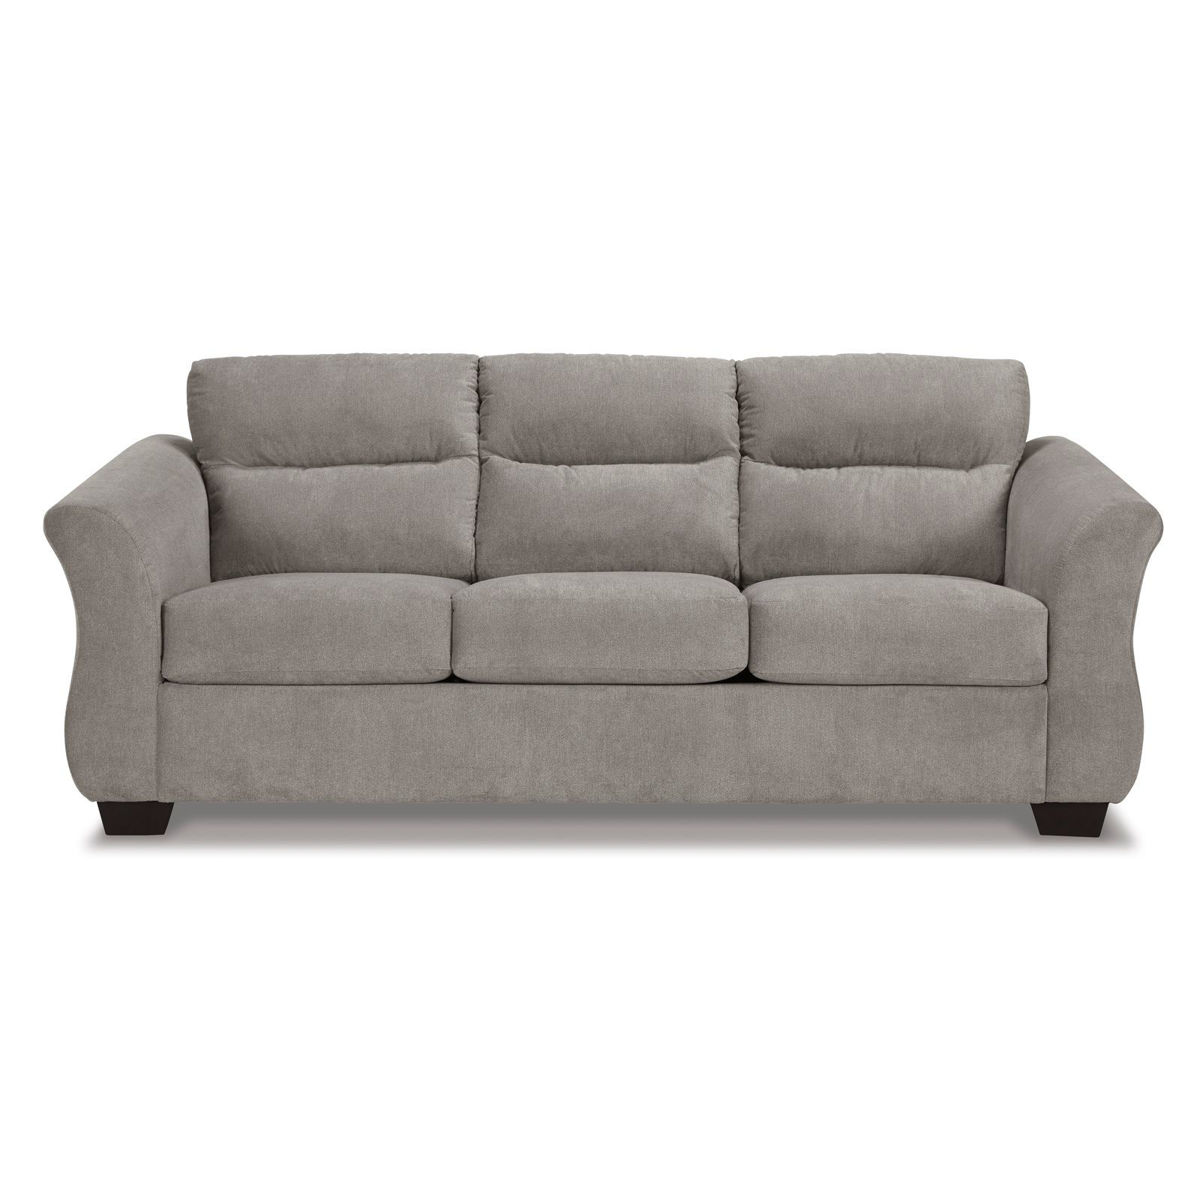 Picture of Miravel Slate Queen Sleeper Sofa